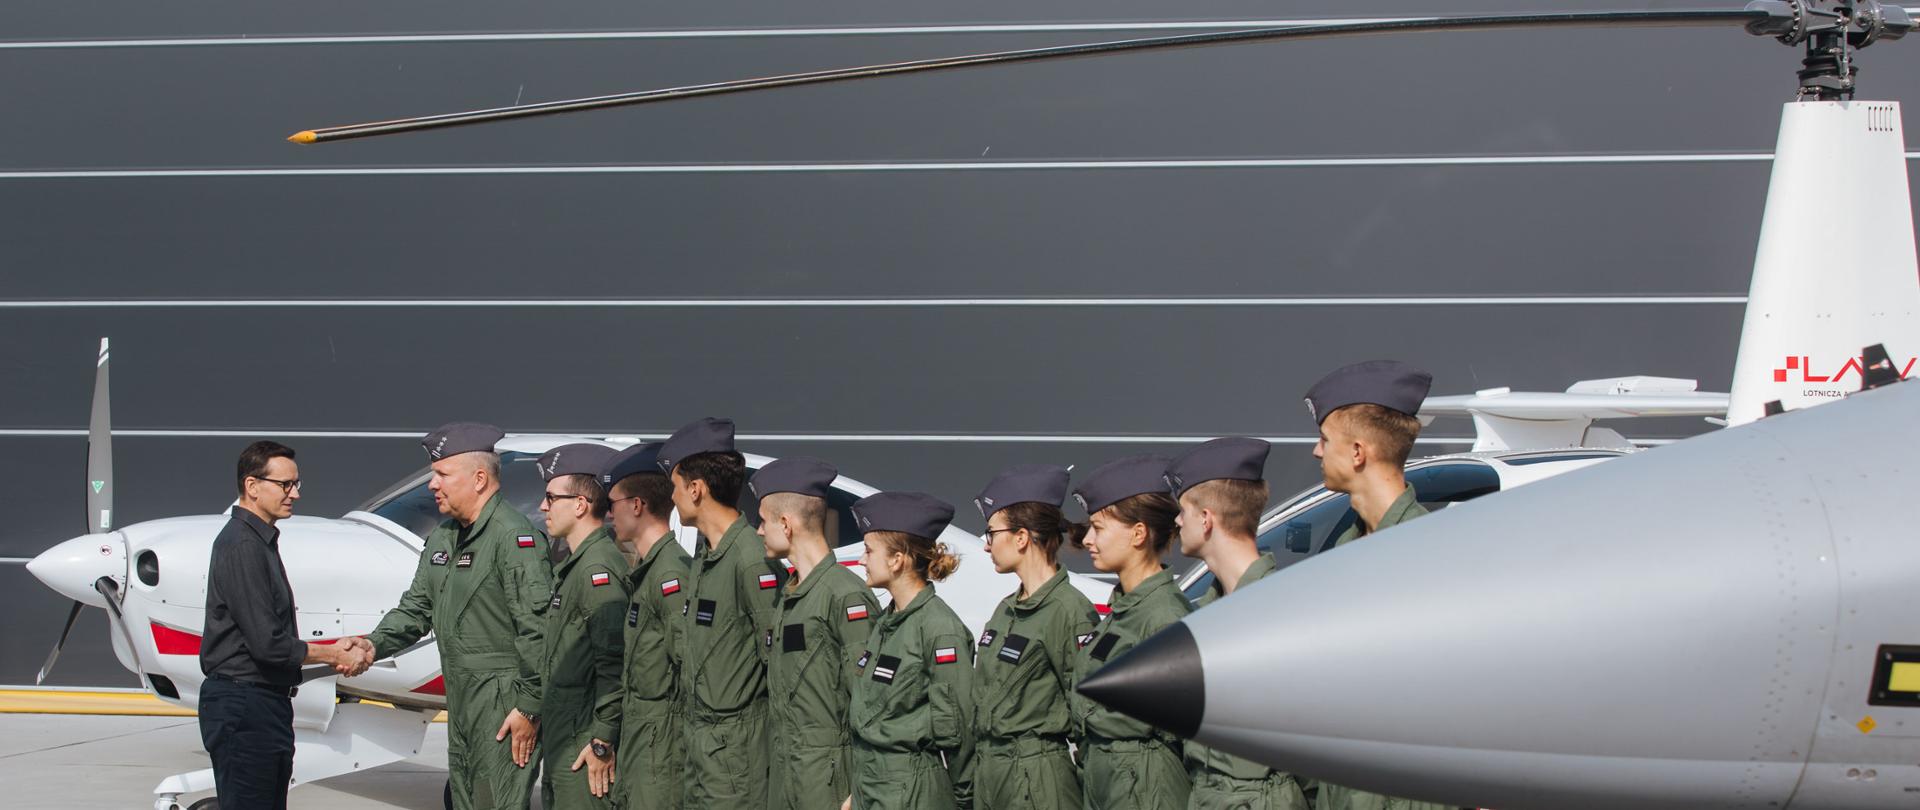 Premier Mateusz Morawiecki podczas spotkania z żołnierzamią w Lotniczej Akademii Wojskowej w Dęblinie.